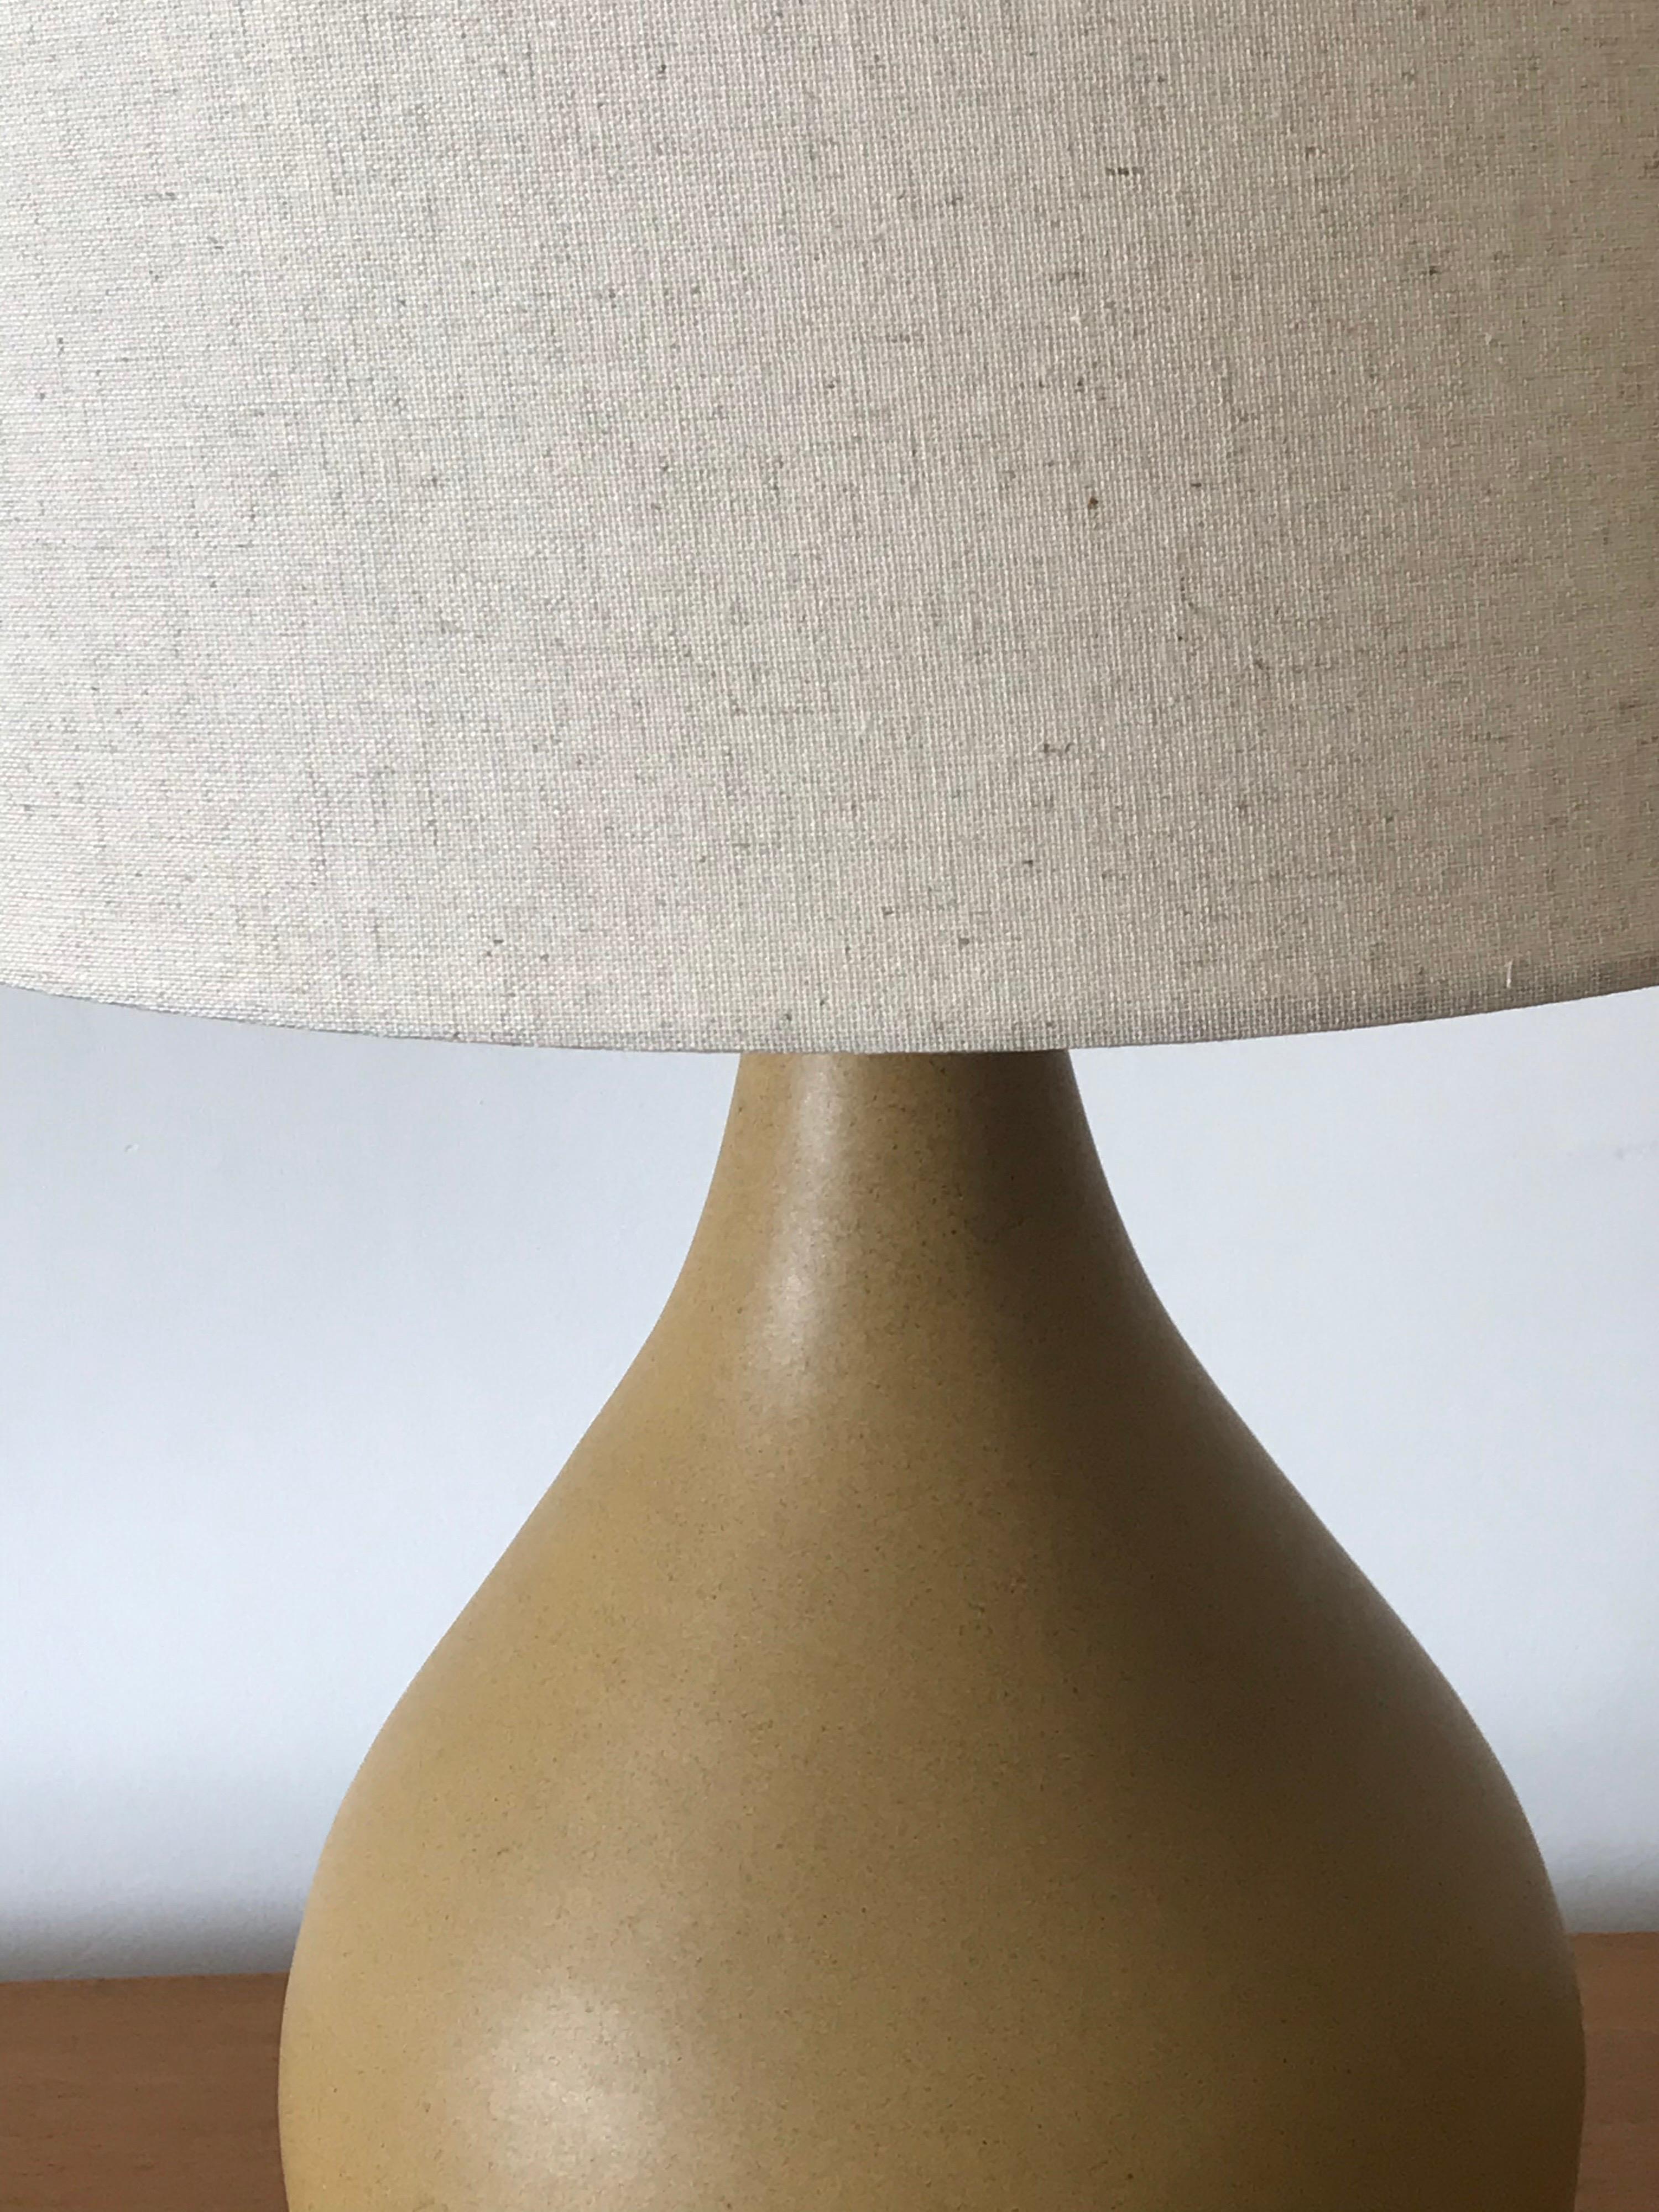 Superbe lampe de table à glaçure plate de couleur ocre, créée par Jane et Gordon Martz. Merveilleuse forme de goutte d'eau. Nouvel abat-jour et nouvel embout.

Mesures : Global
26